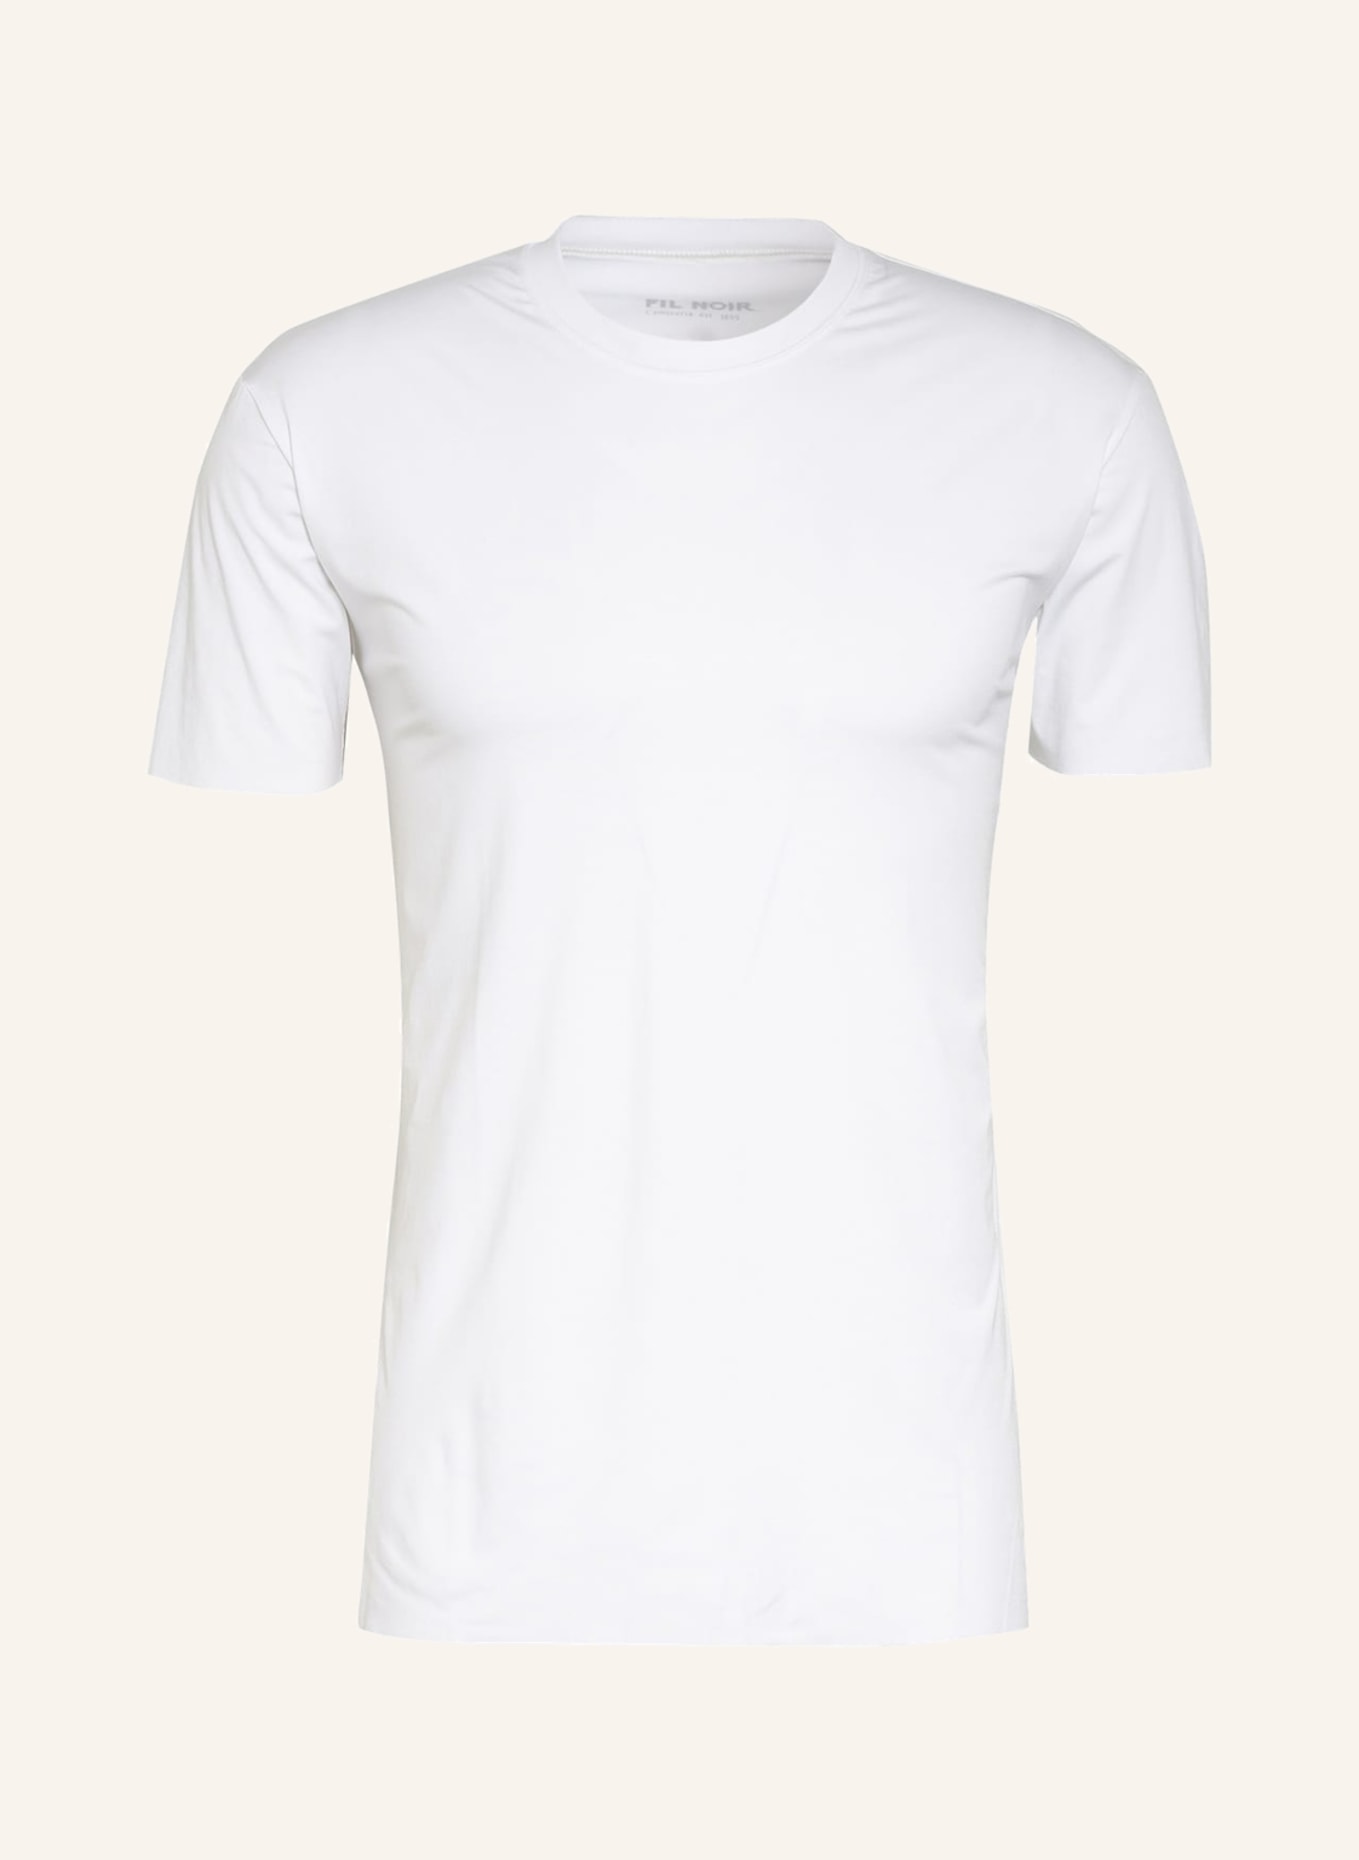 FIL NOIR T-shirt MONEGLIA, Color: WHITE (Image 1)